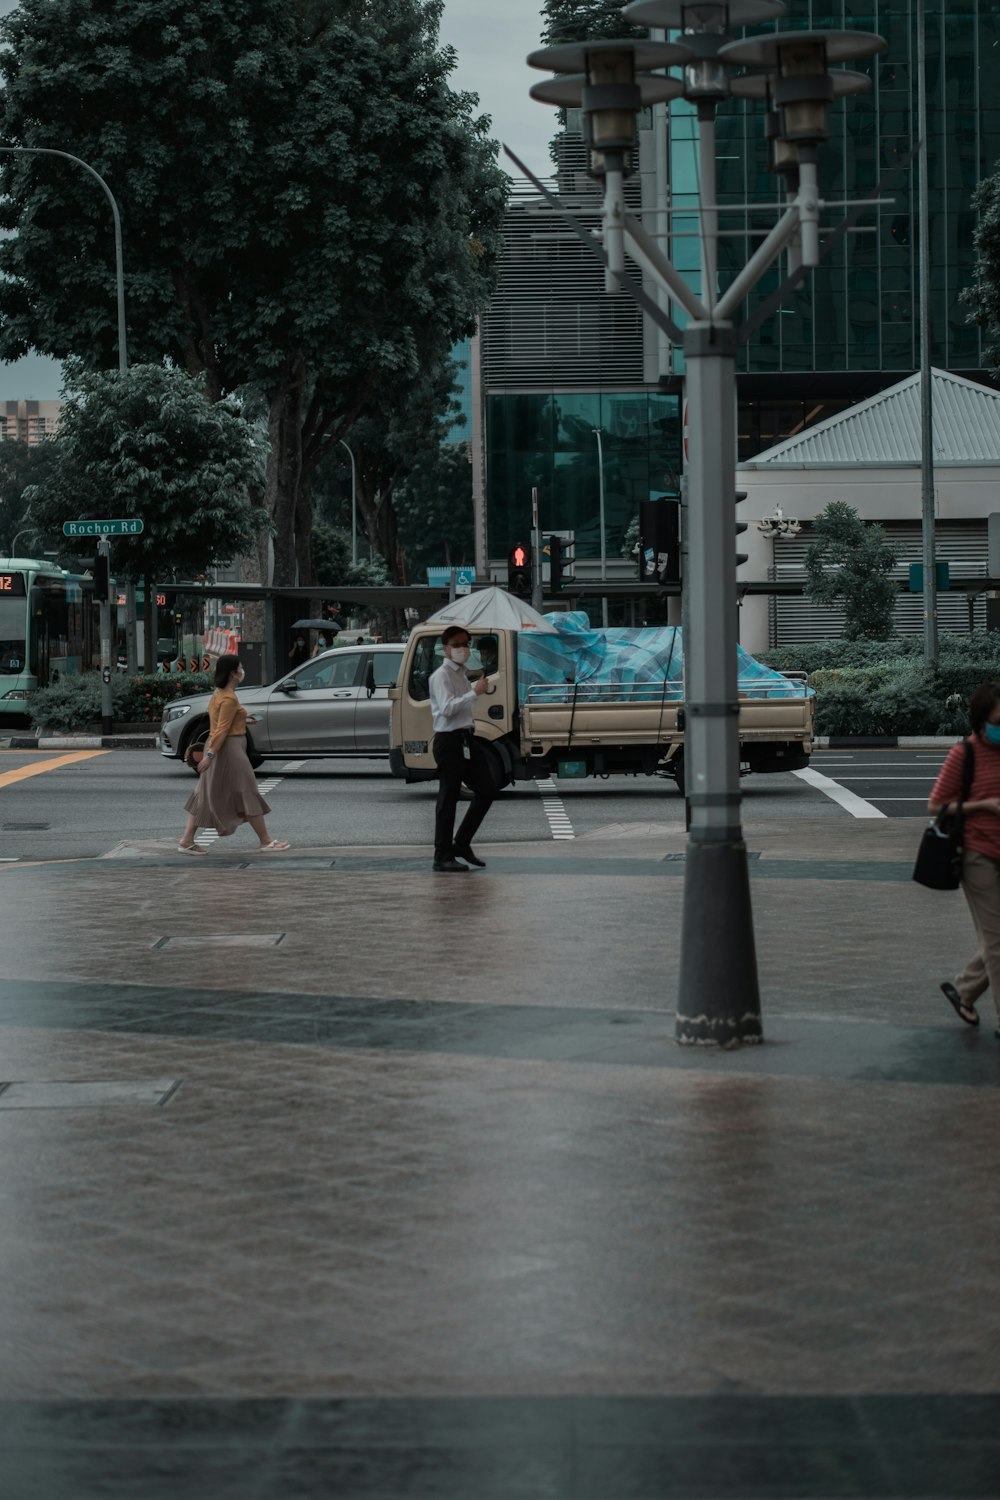 people walking on sidewalk during daytime